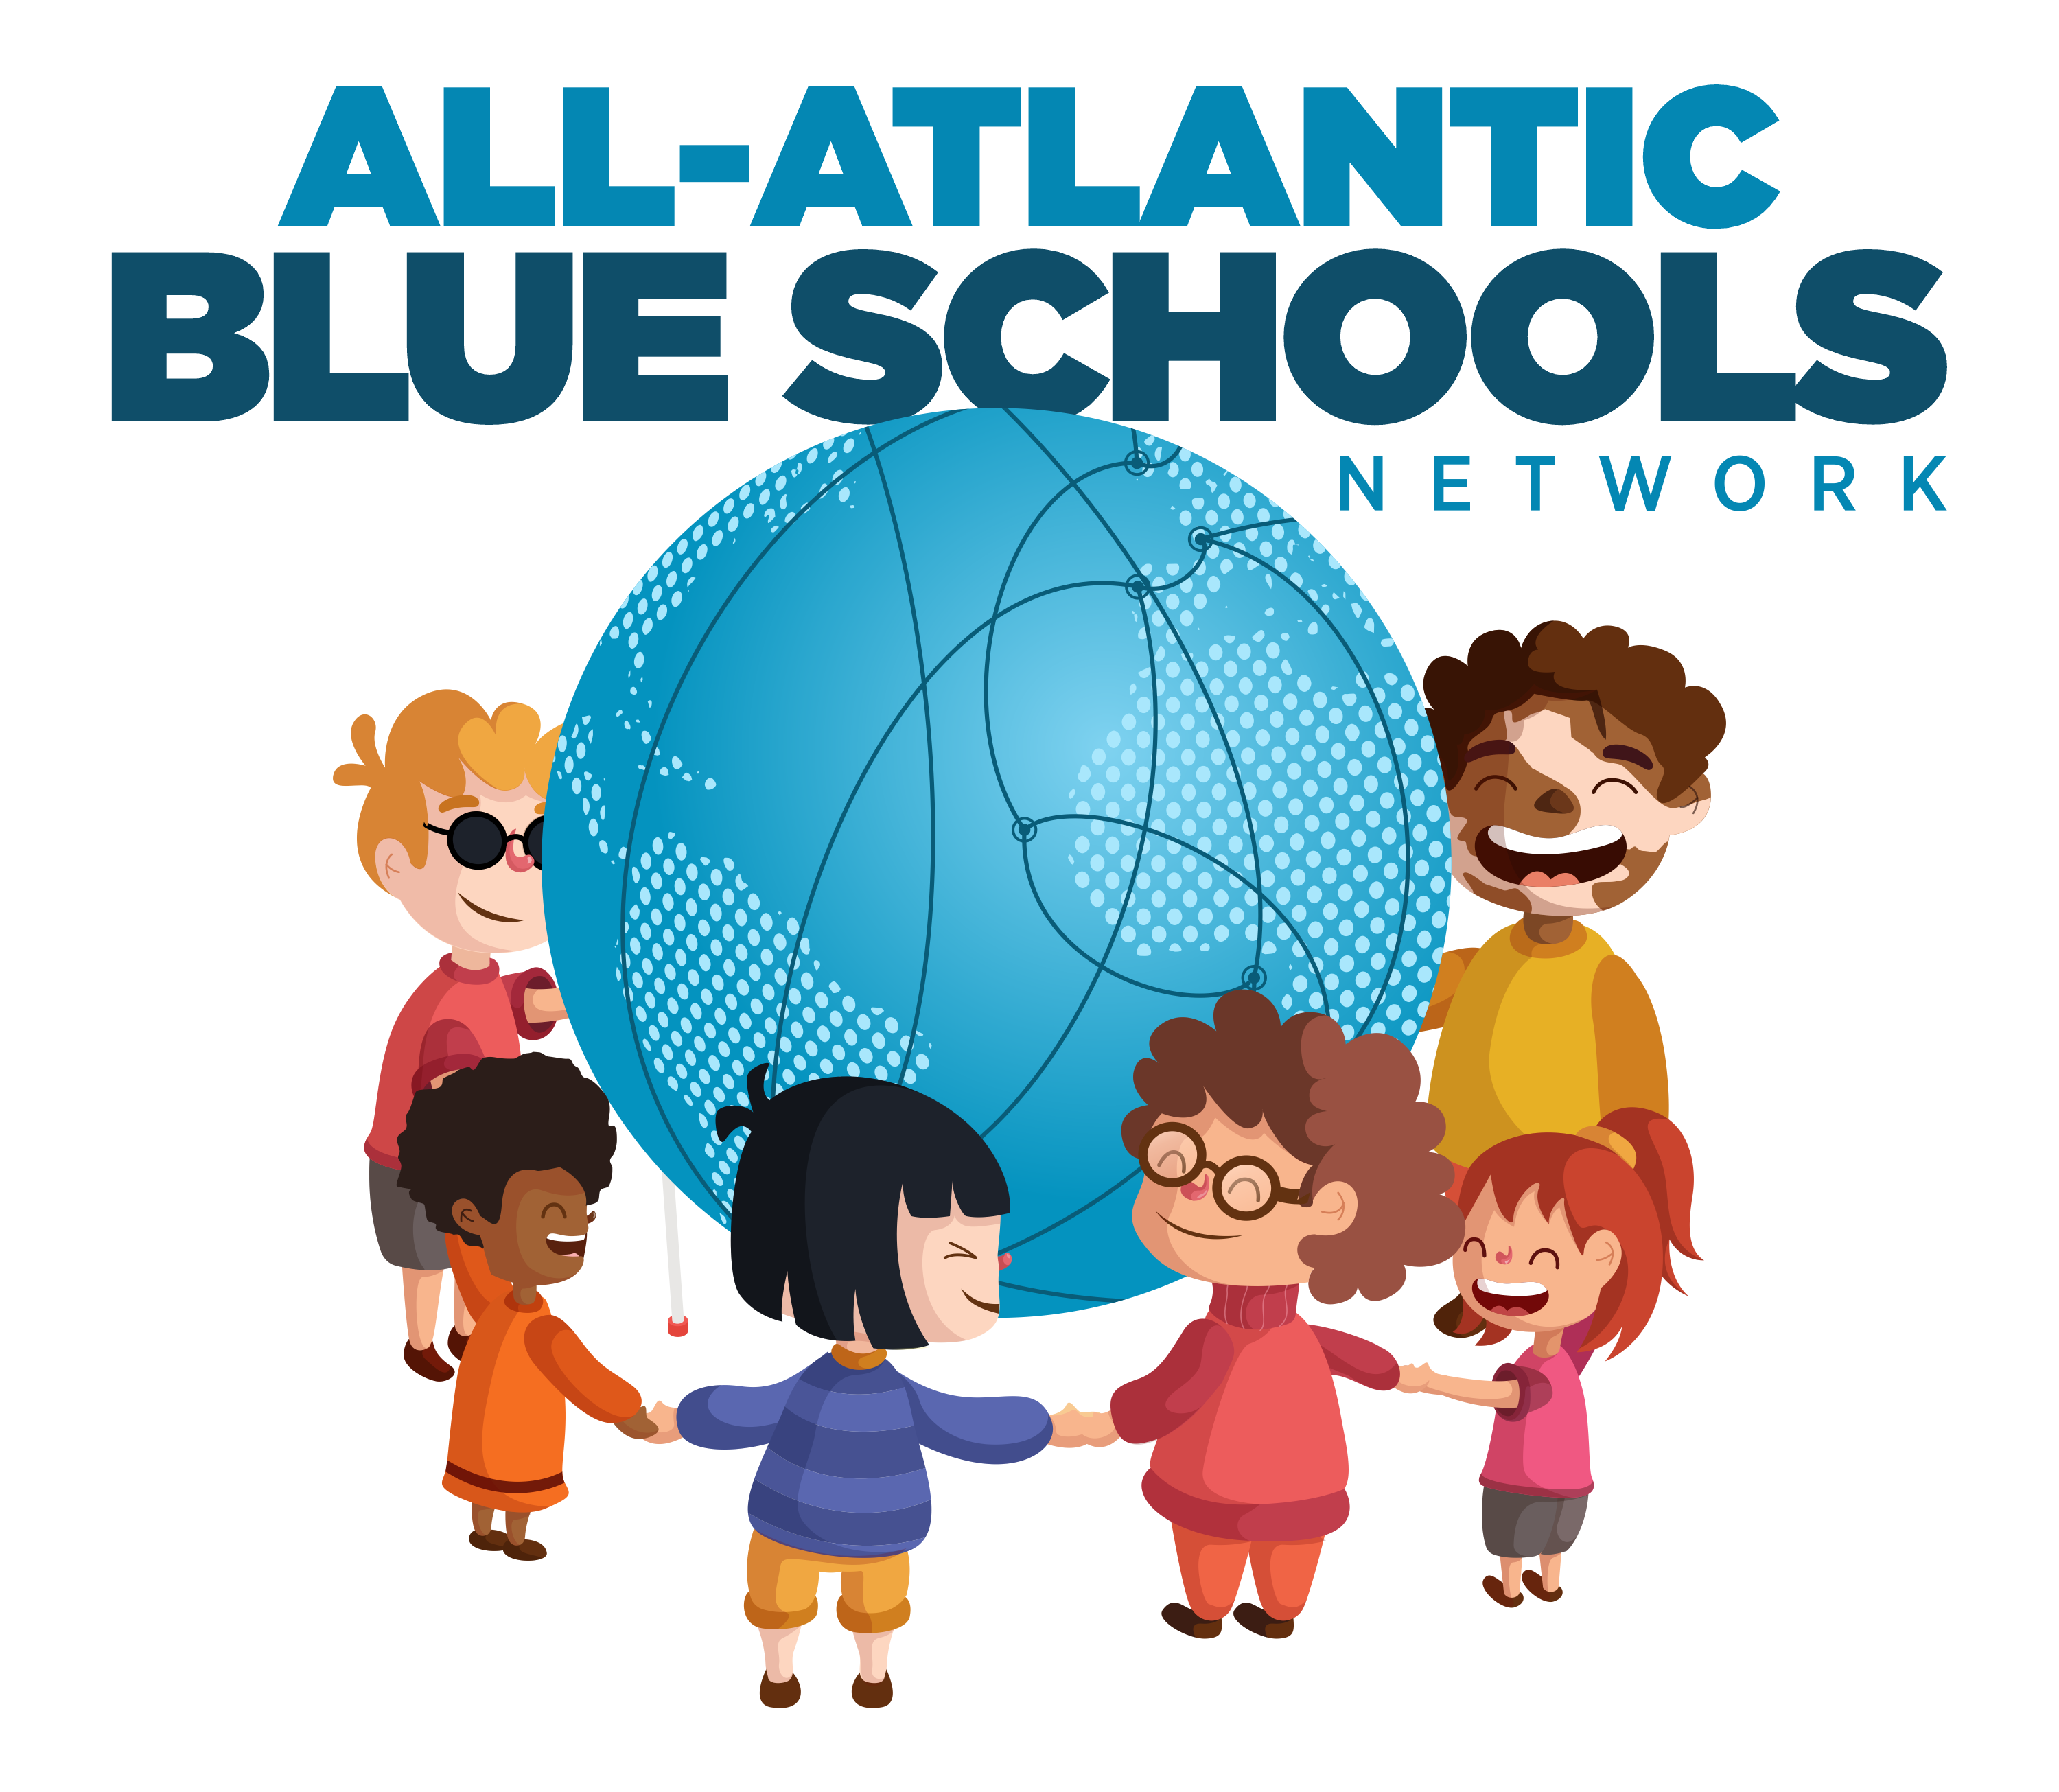 All-Atlantic Blue Schools Network